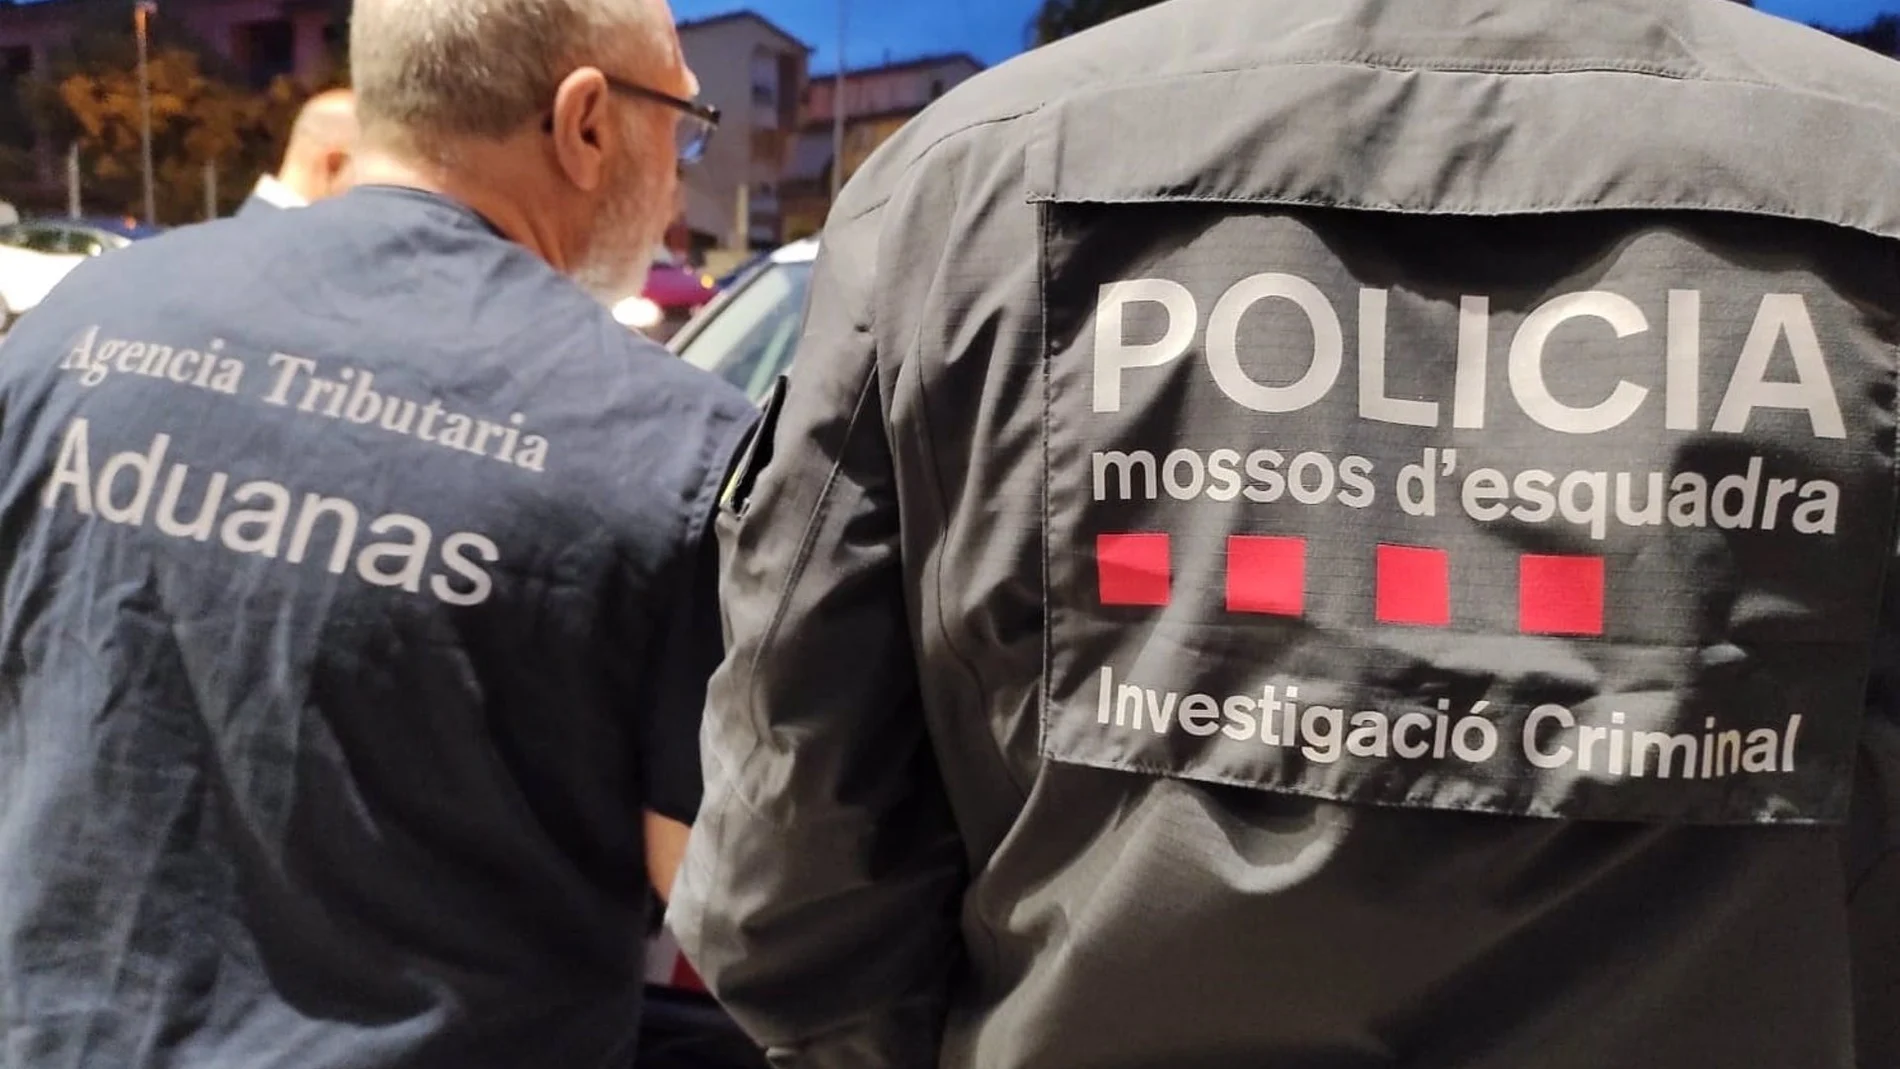 Agentes de los Mossos d'Esquadra y la Unidad de Vigilancia Aduanera de la Agencia Tributaria. Los Mossos d'Esquadra y la Unidad de Vigilancia Aduanera de la Agencia Tributaria han detenido a una cincuentena de personas en un operativo policial este martes contra un grupo que presuntamente cultivaba y traficaba con marihuana en Catalunya, han informado fuentes próximas a la investigación a Europa Press. ESPAÑA EUROPA CATALUÑA SOCIEDAD MOSSOS D'ESQUADRA